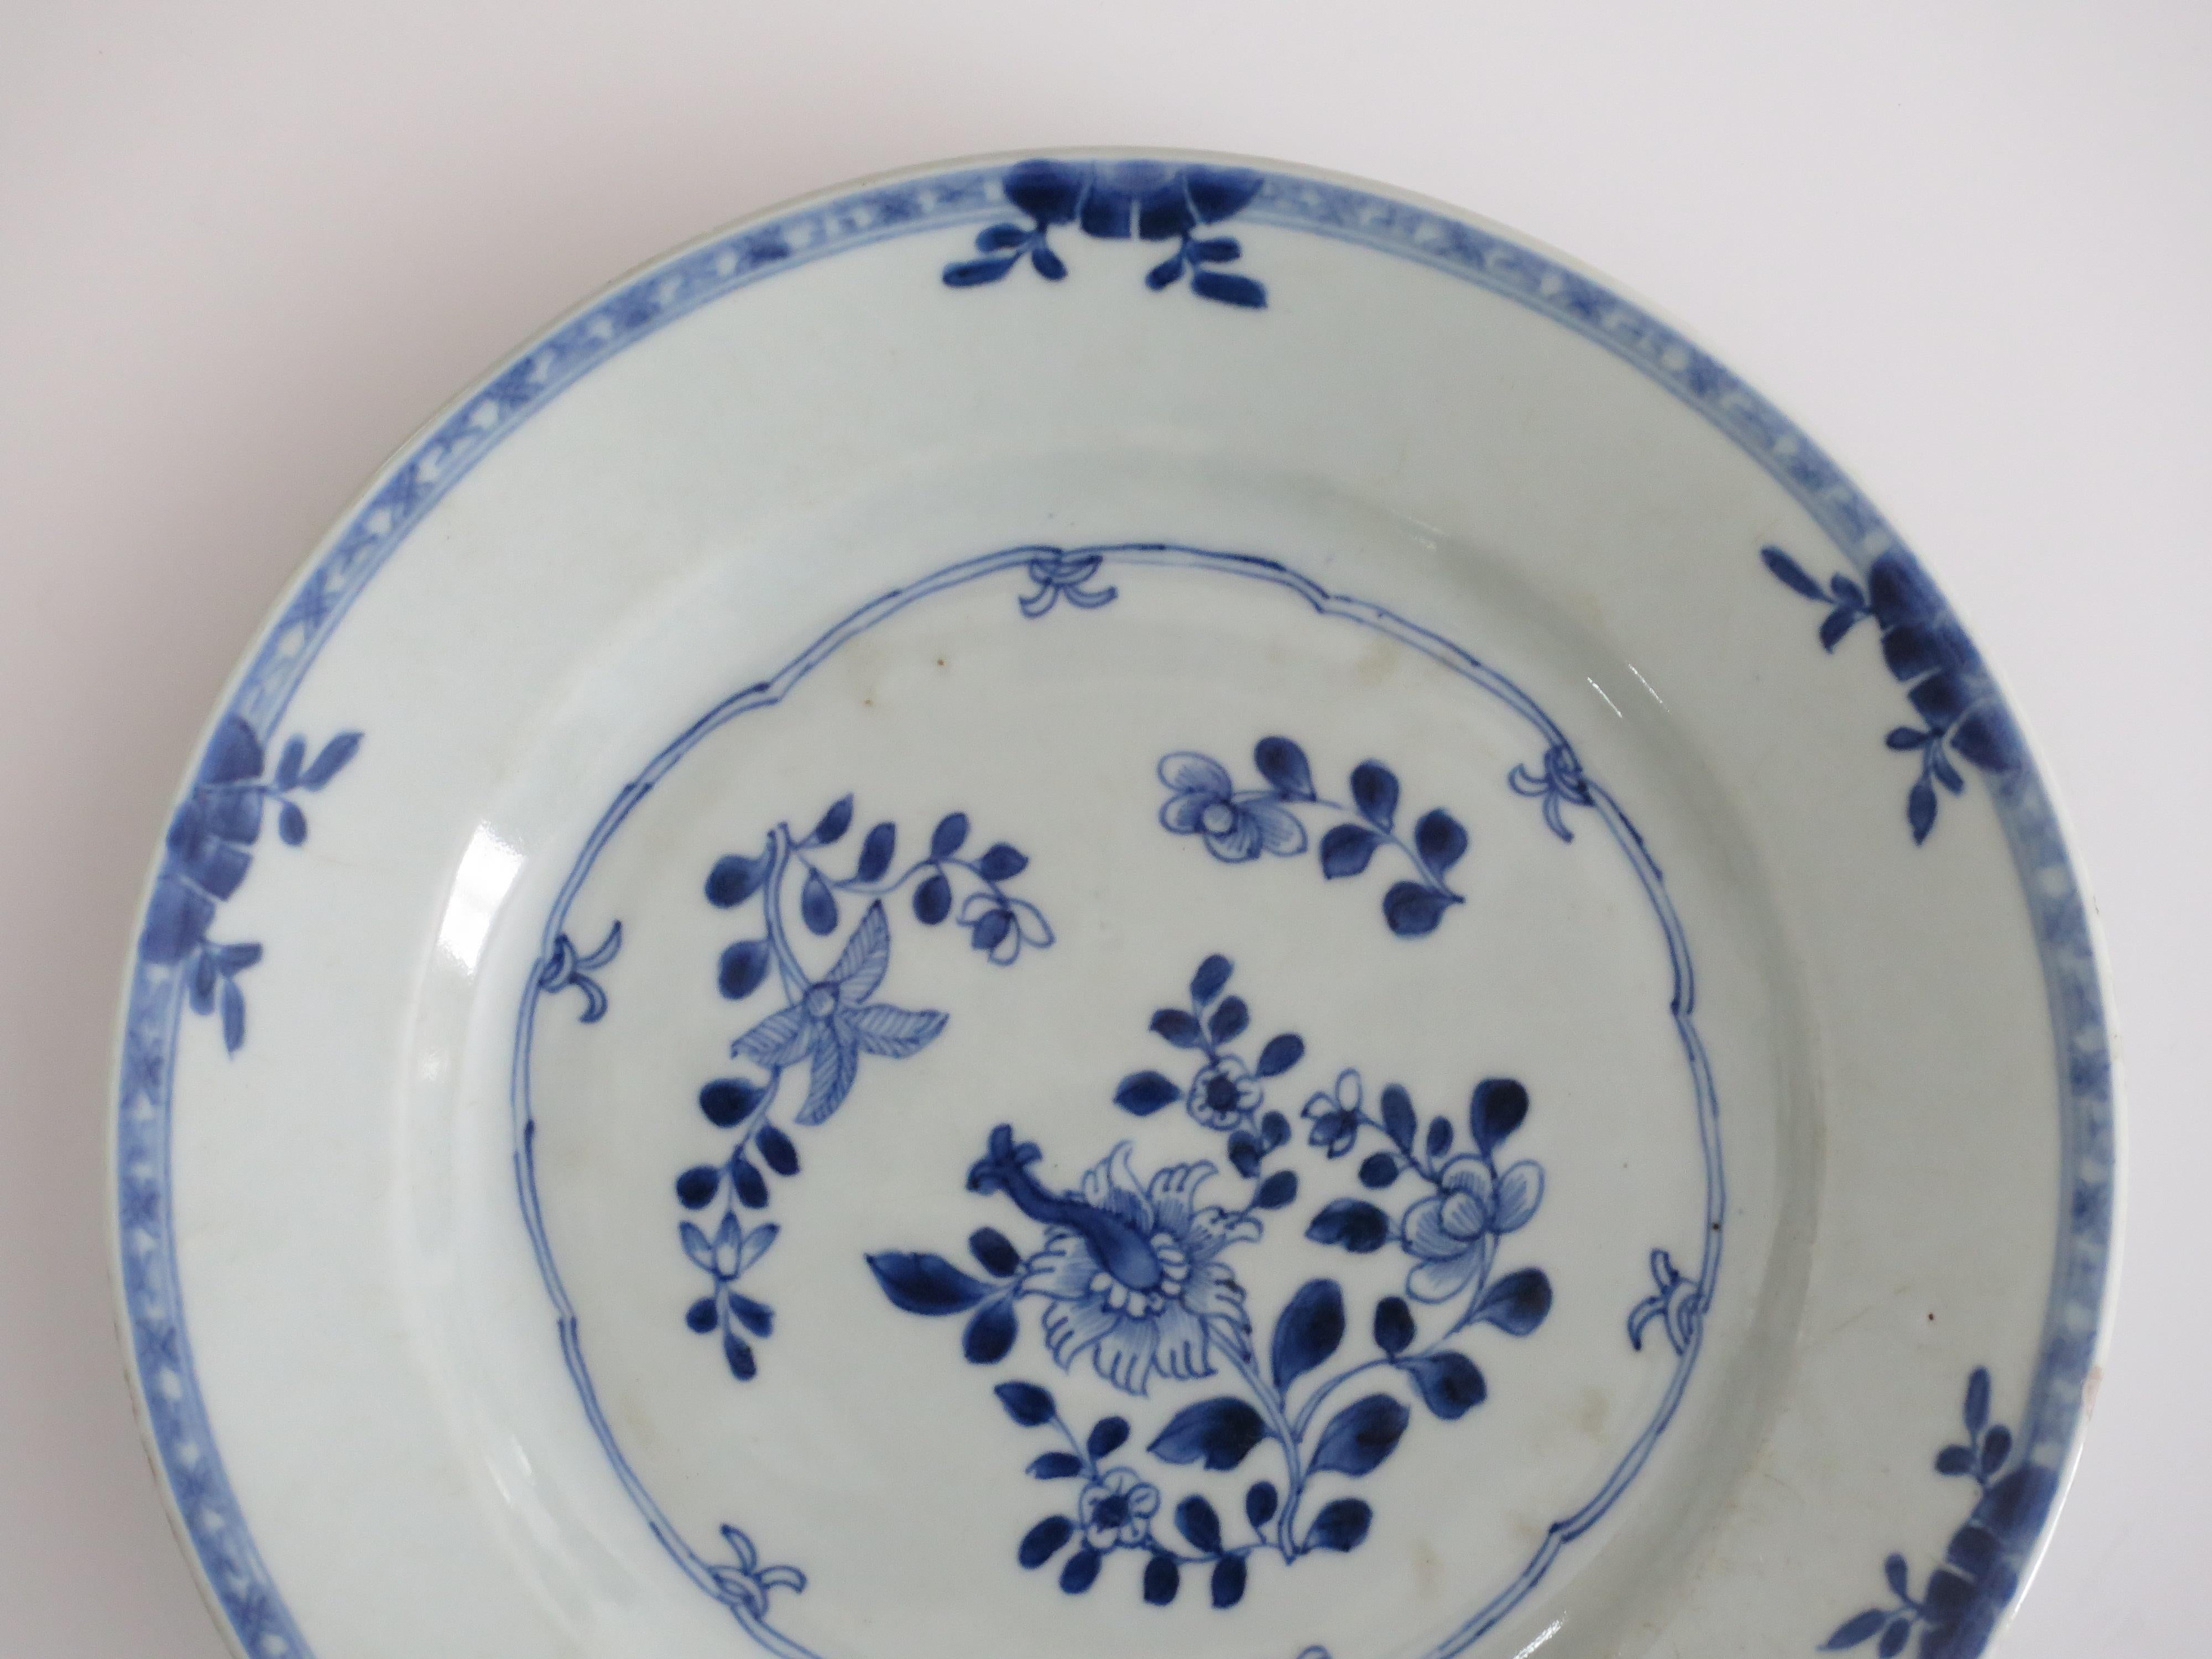 Es handelt sich um einen handbemalten blau-weißen chinesischen Porzellanteller aus der zweiten Hälfte des 18. Jahrhunderts, um 1770, Qing-Dynastie.

Der Teller ist gut getöpfert und wurde von Hand in verschiedenen Schattierungen von Kobalt 